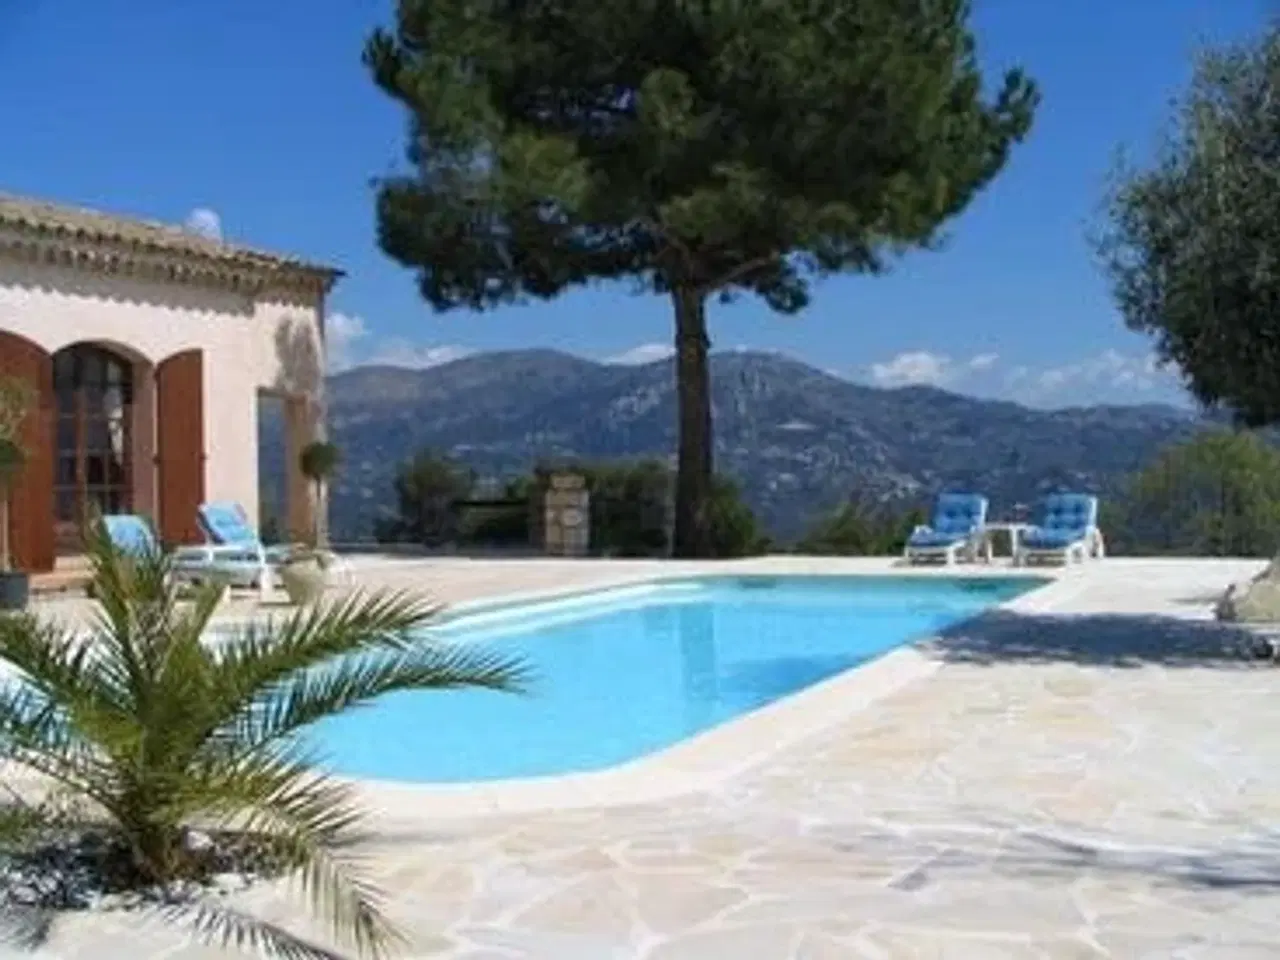 Billede 2 - Sommerhus til 8 personer med stor pool og fantastisk udsigt til leje i Provence.